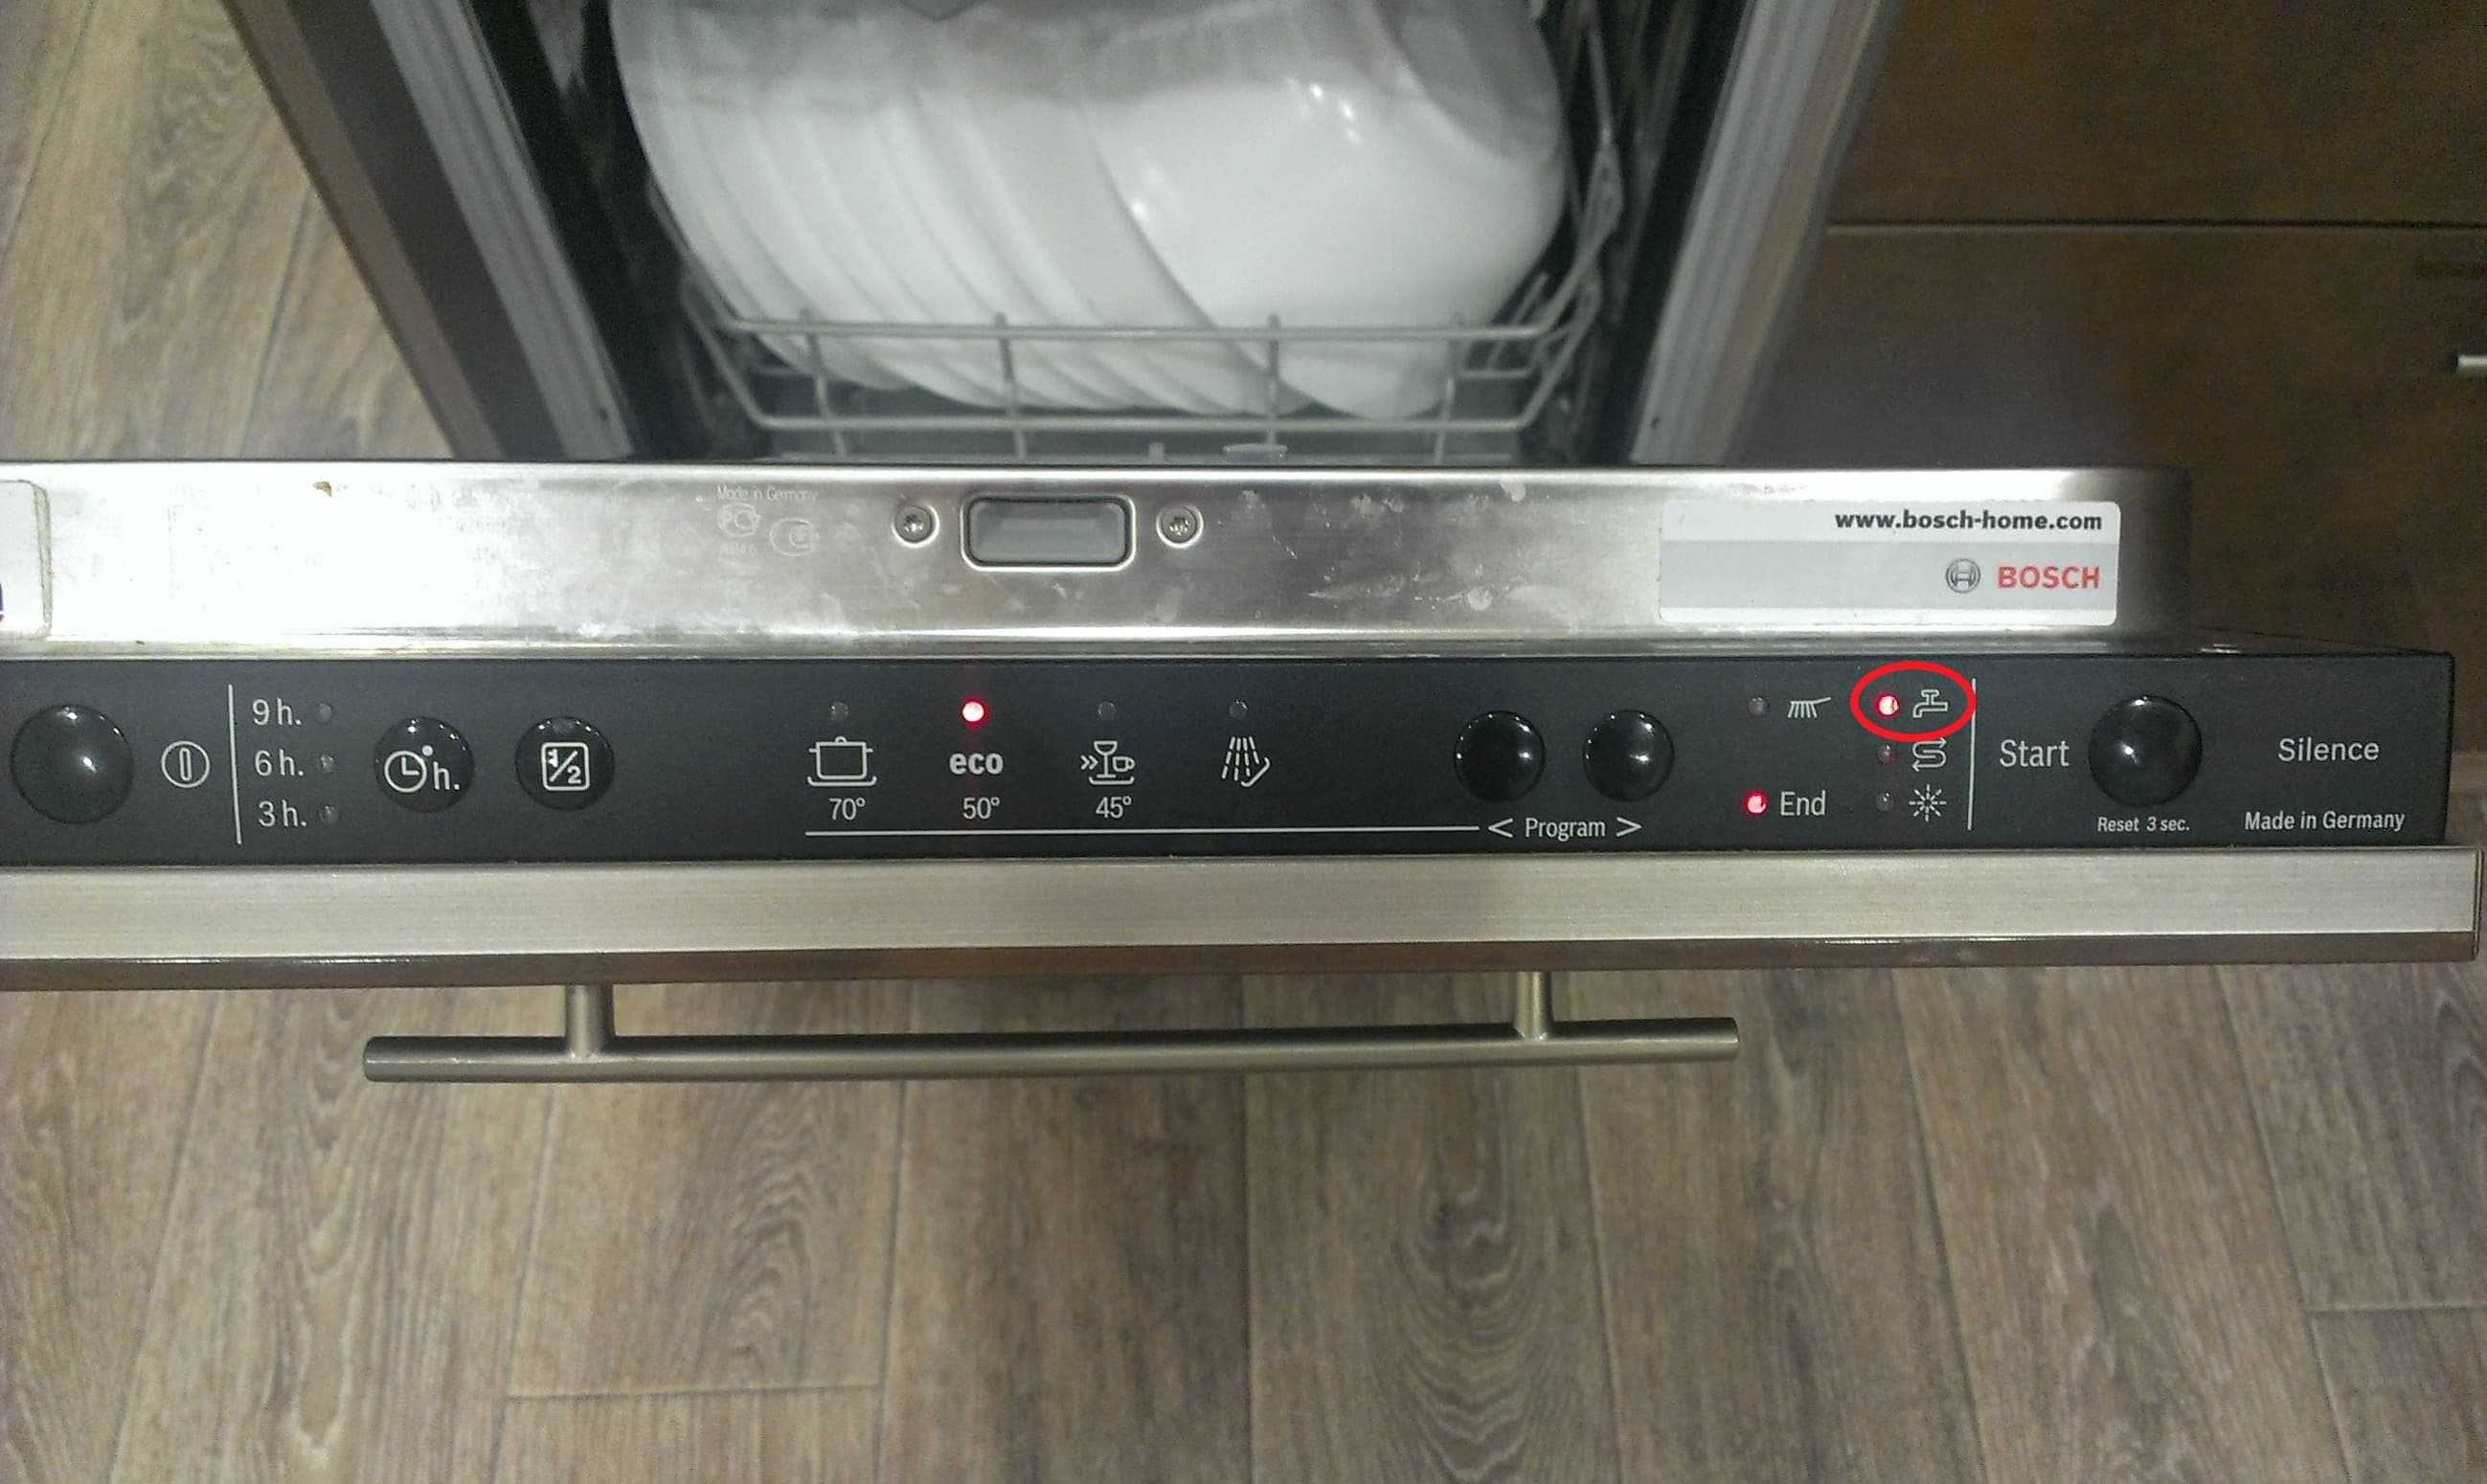 Hansa значки на панели посудомоечной машины